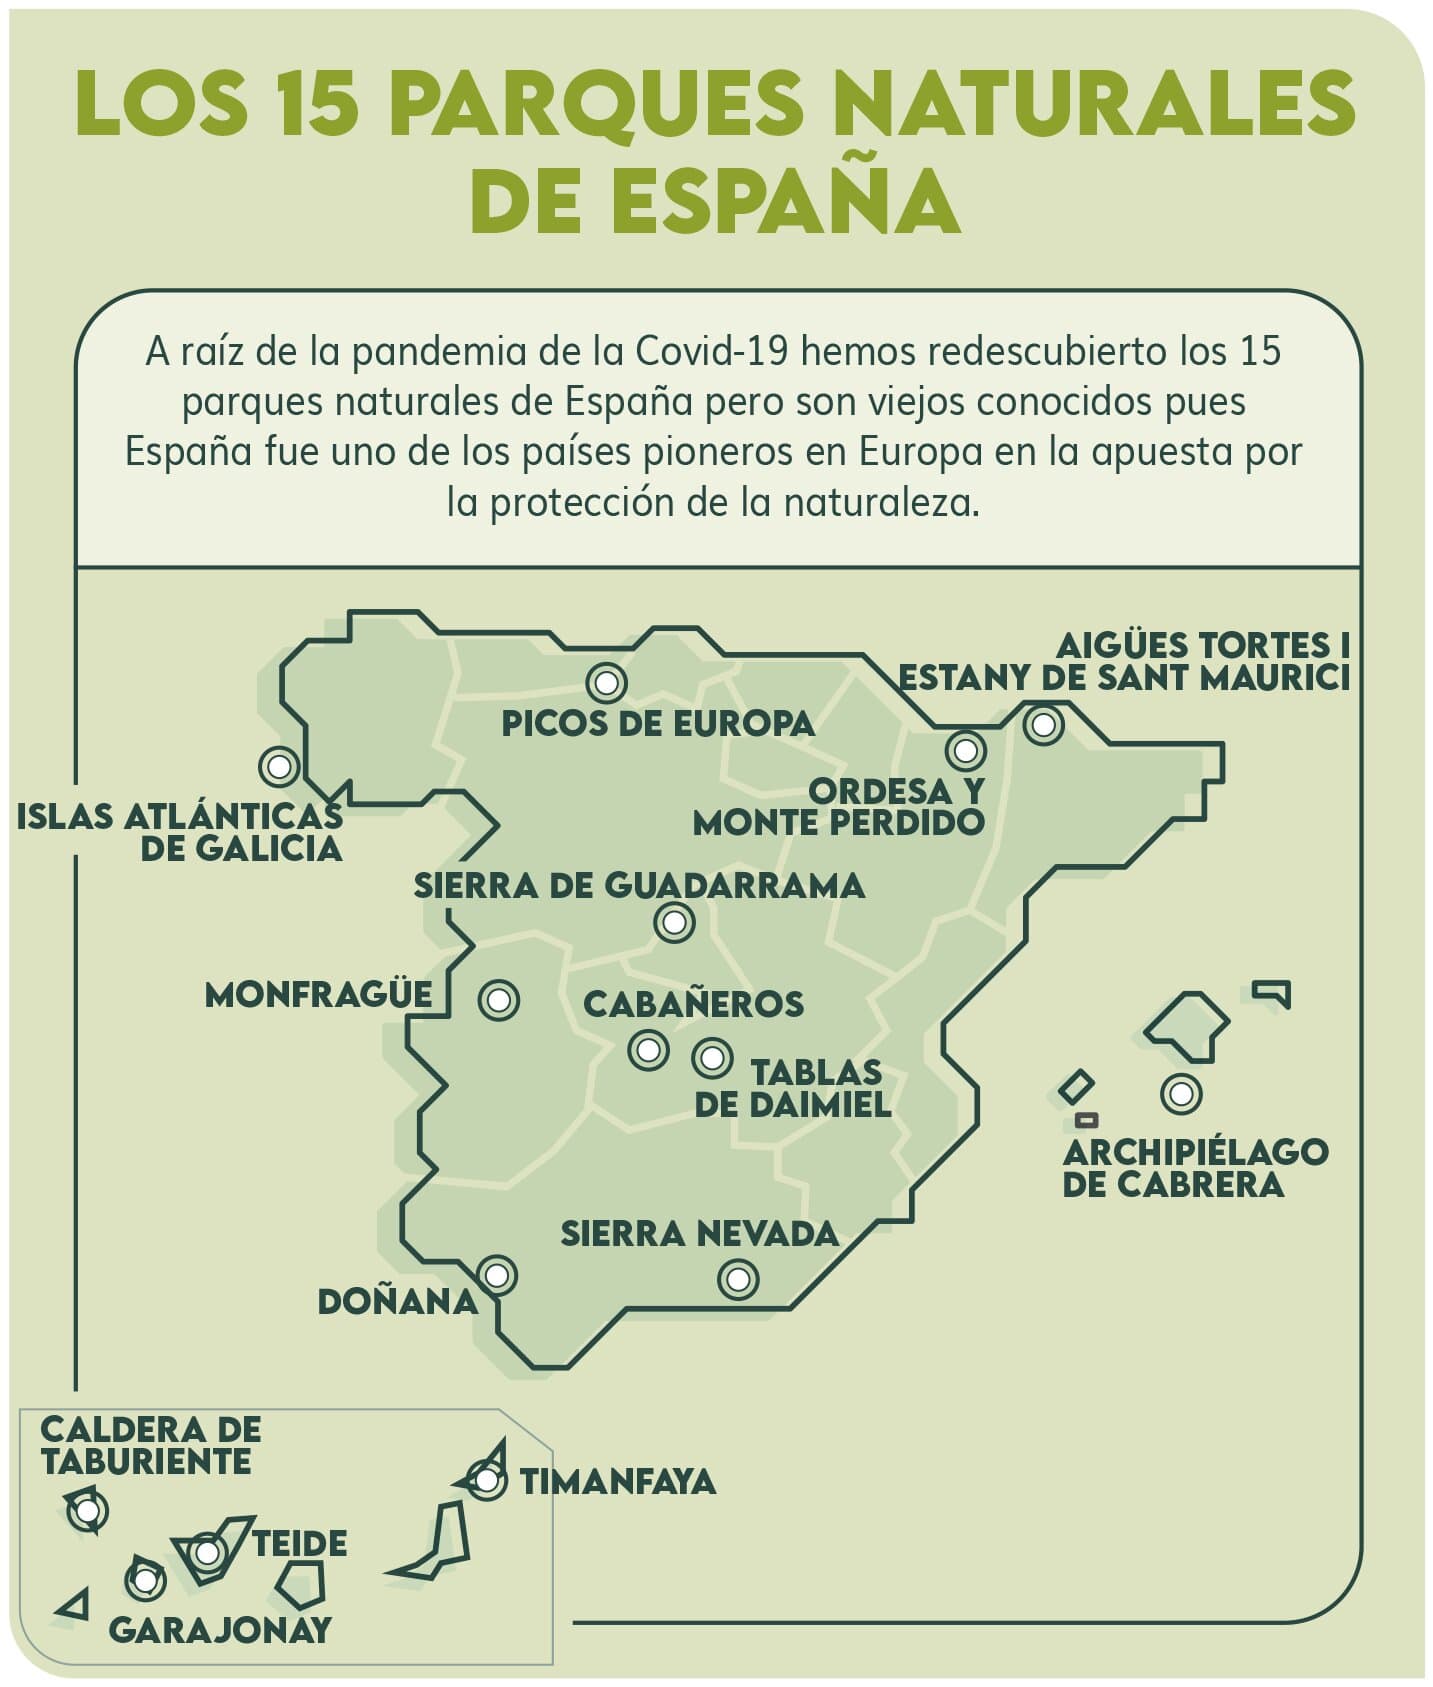 Parques naturales de España